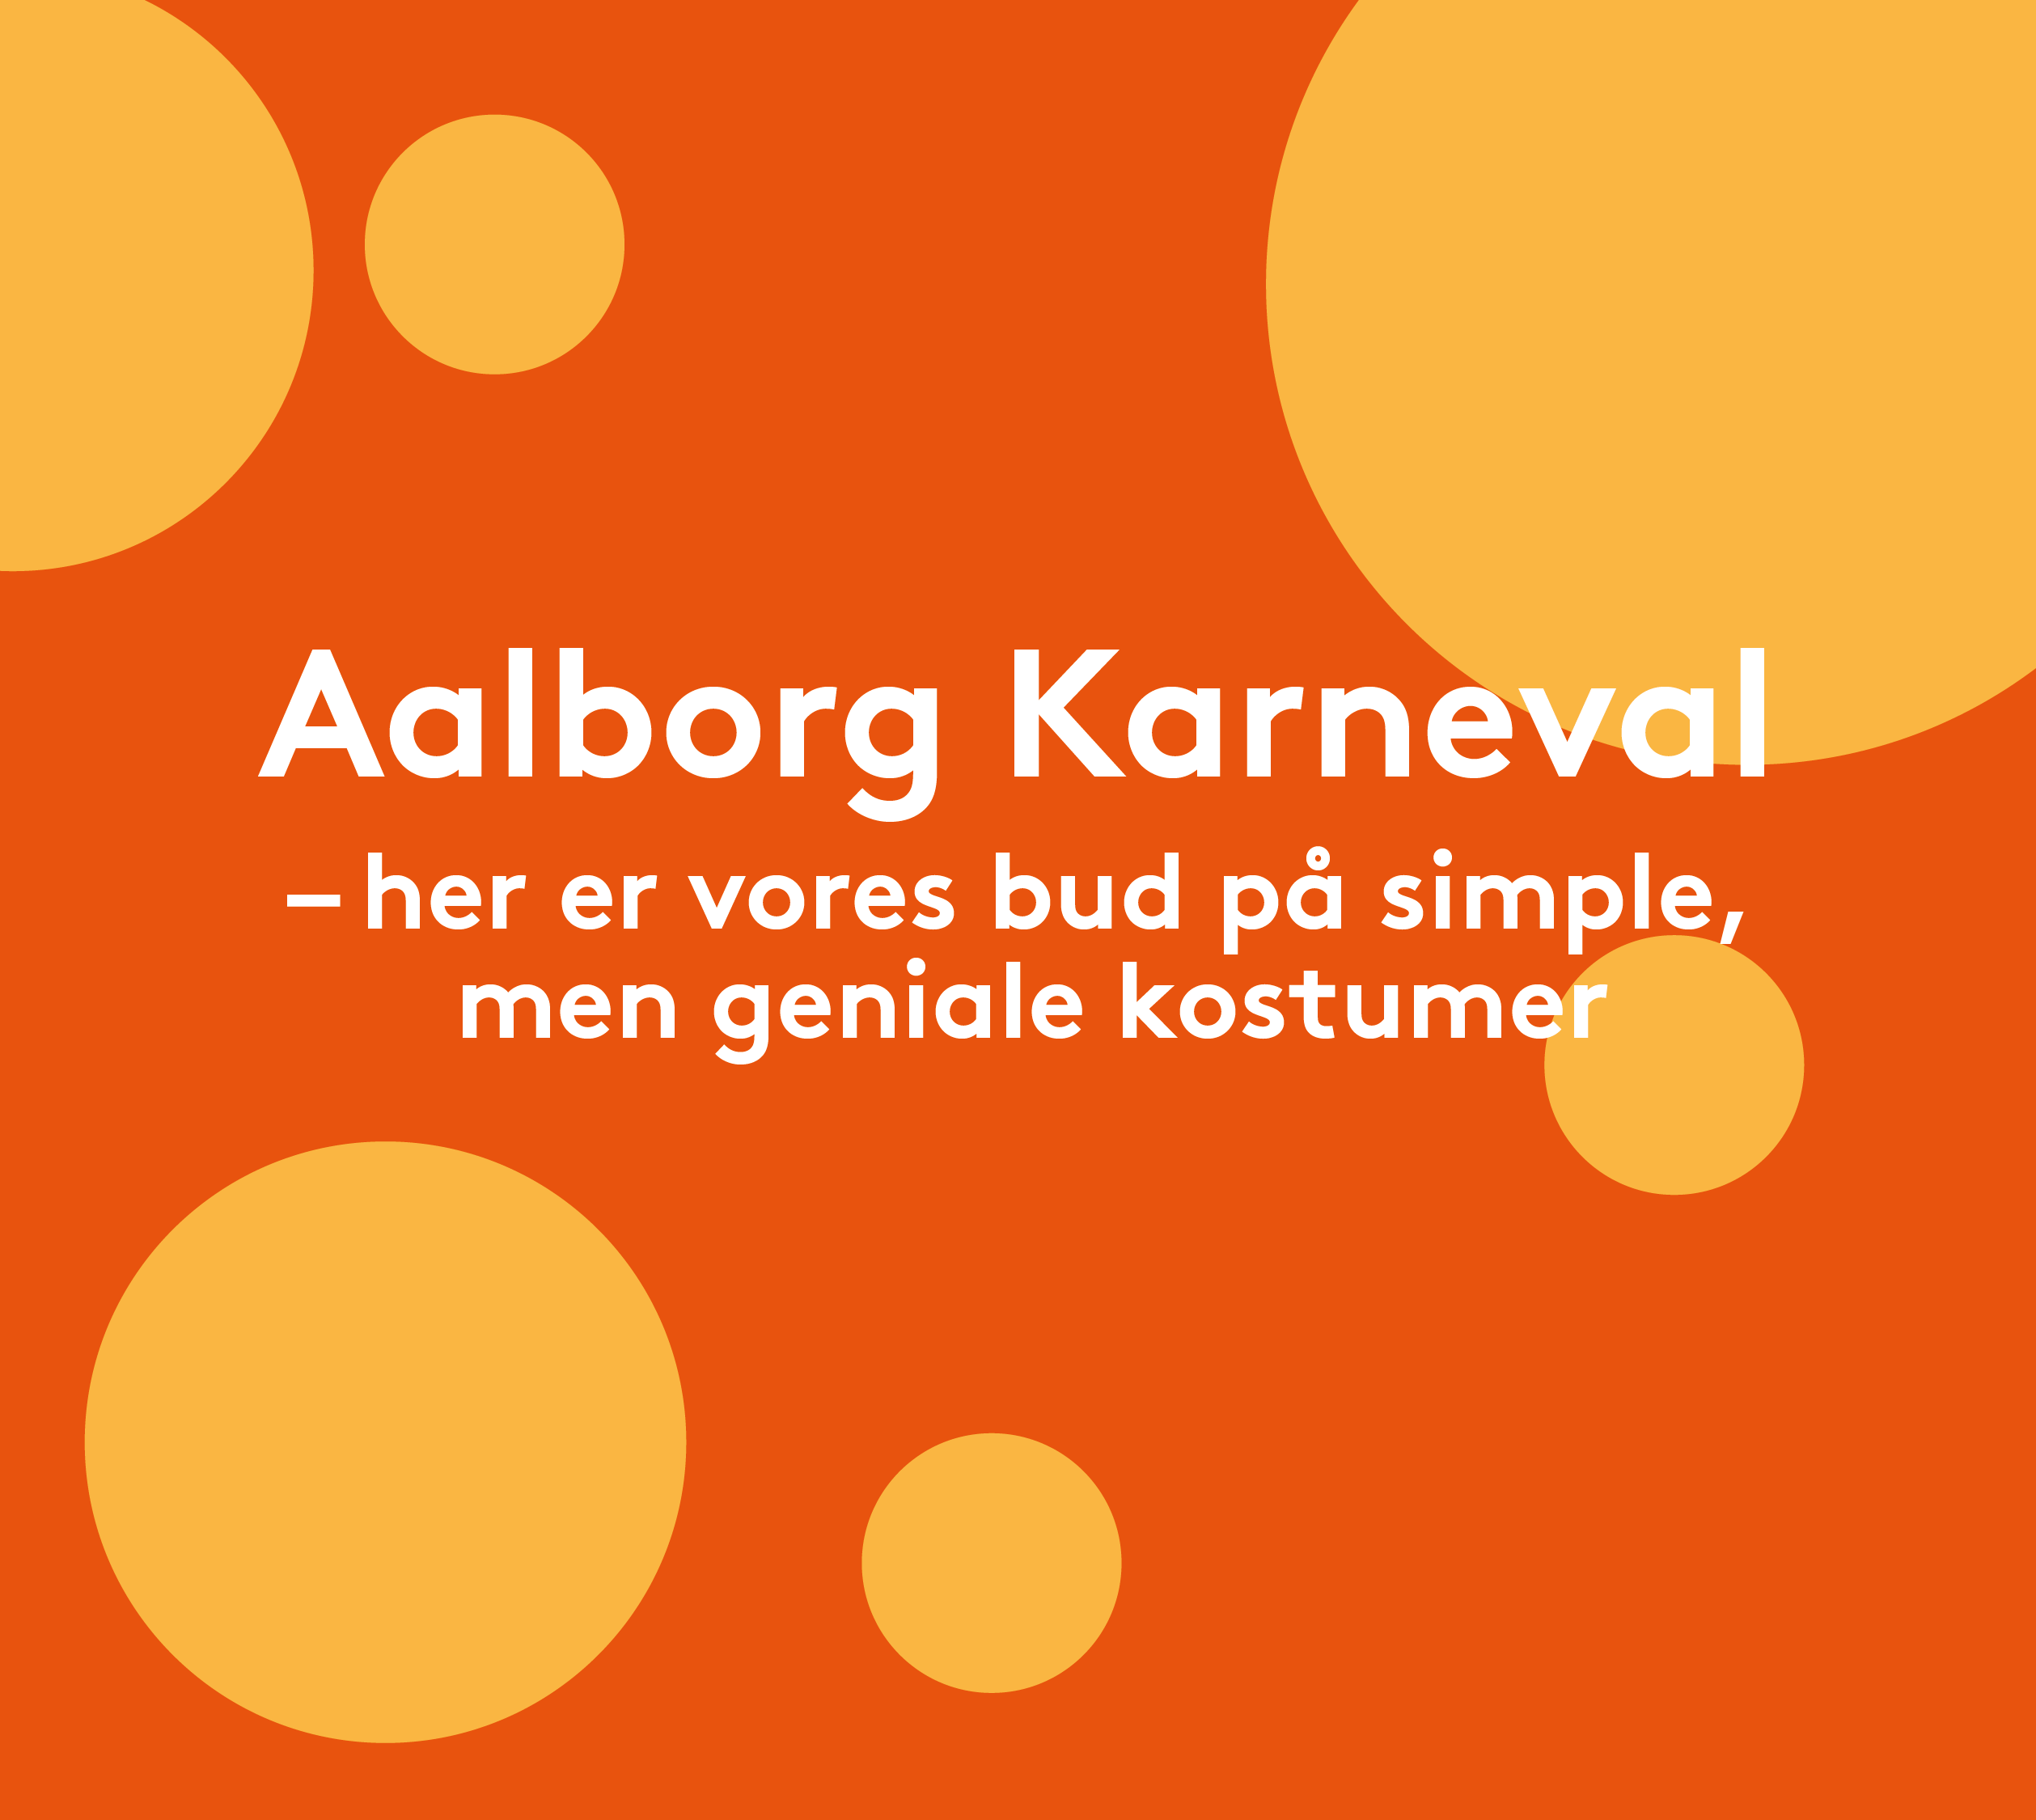 Aalborg Karnevalskostumer 